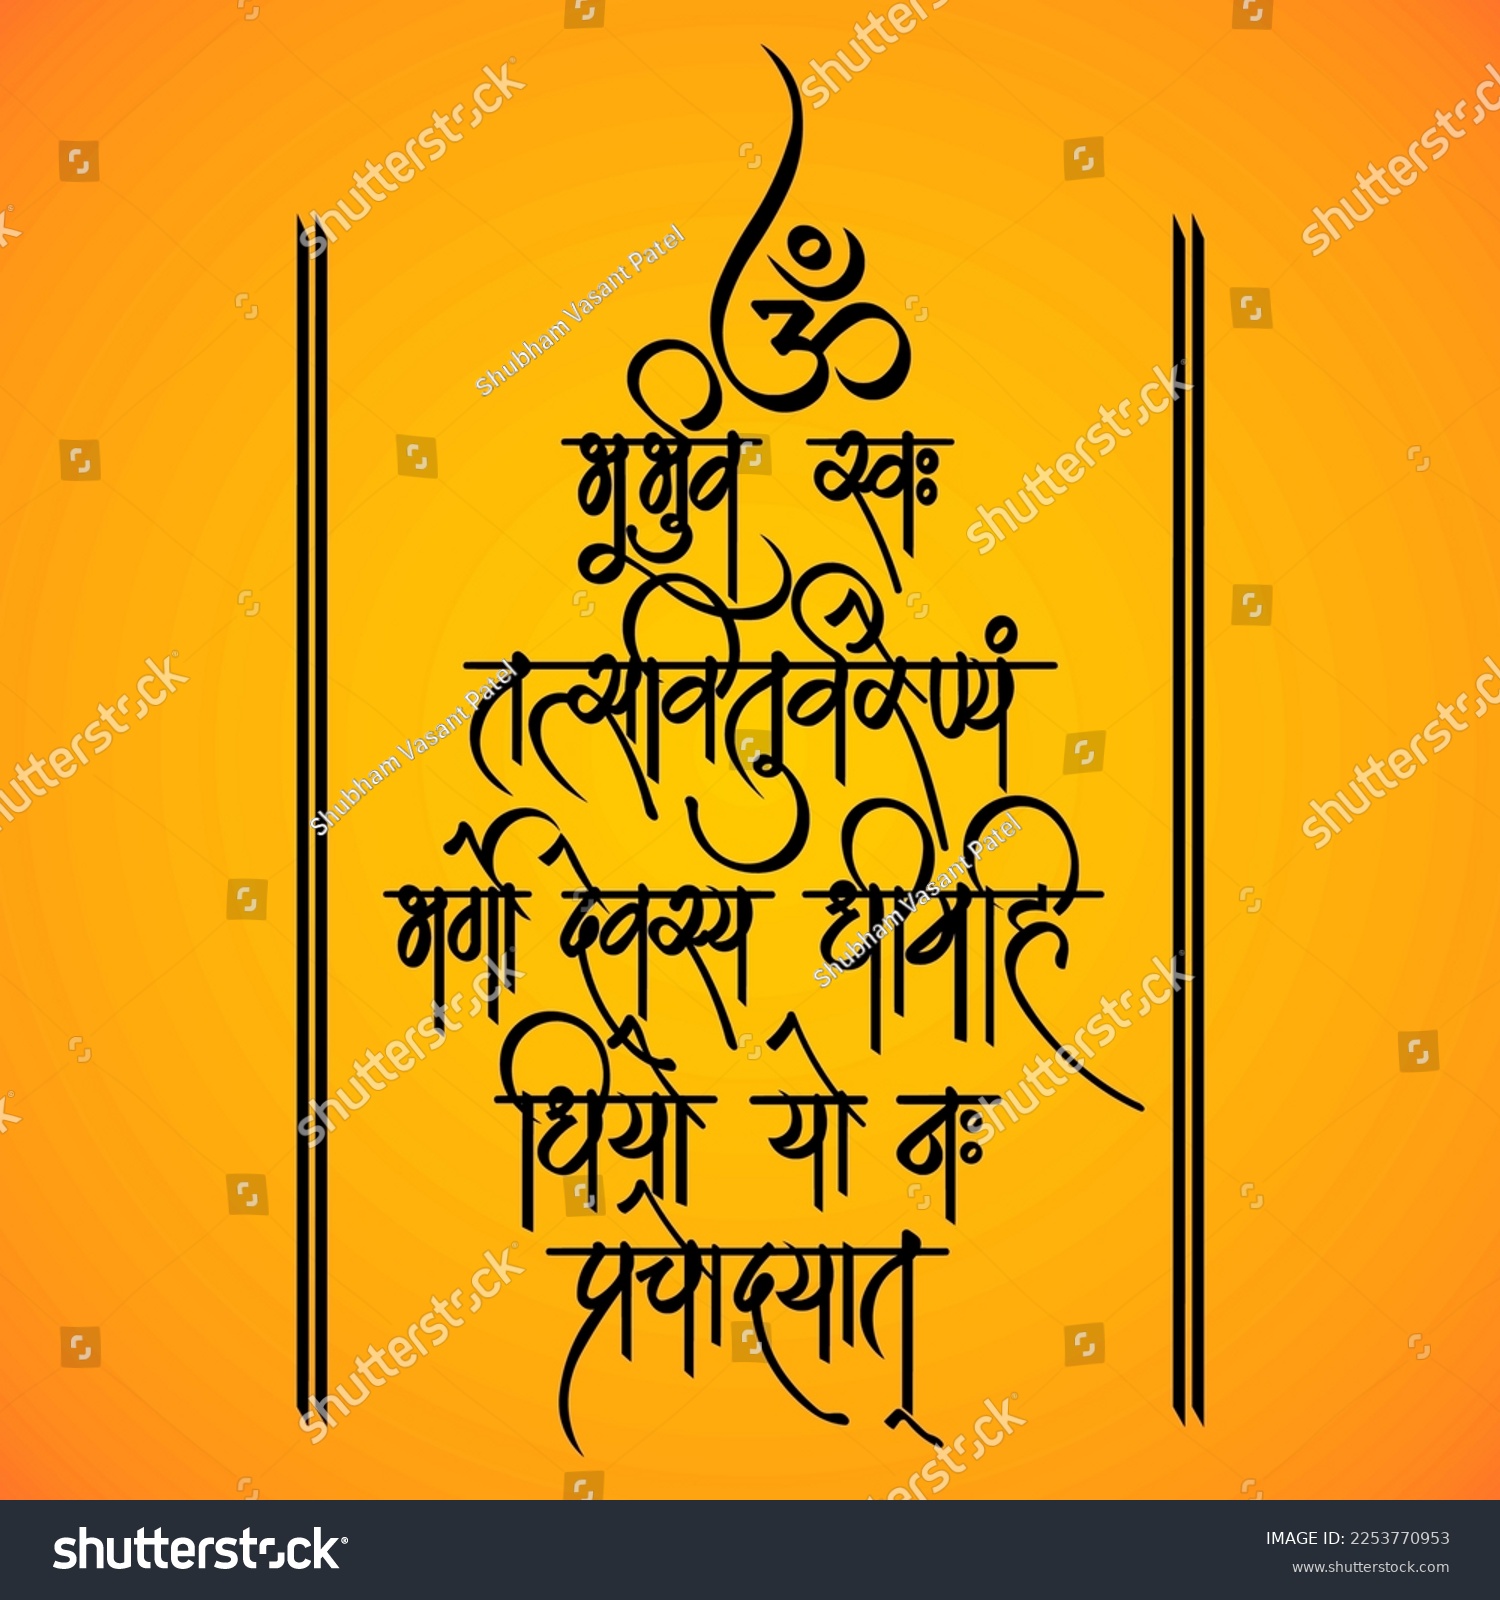 SVG of Gayatri Mantra
English Translation :
Om Bhur Bhuvassuvaha | 
Tatsa viturvarenyam | 
Bhargo devasya dhimahi | 
Dhiyo yonaha prachidayat svg